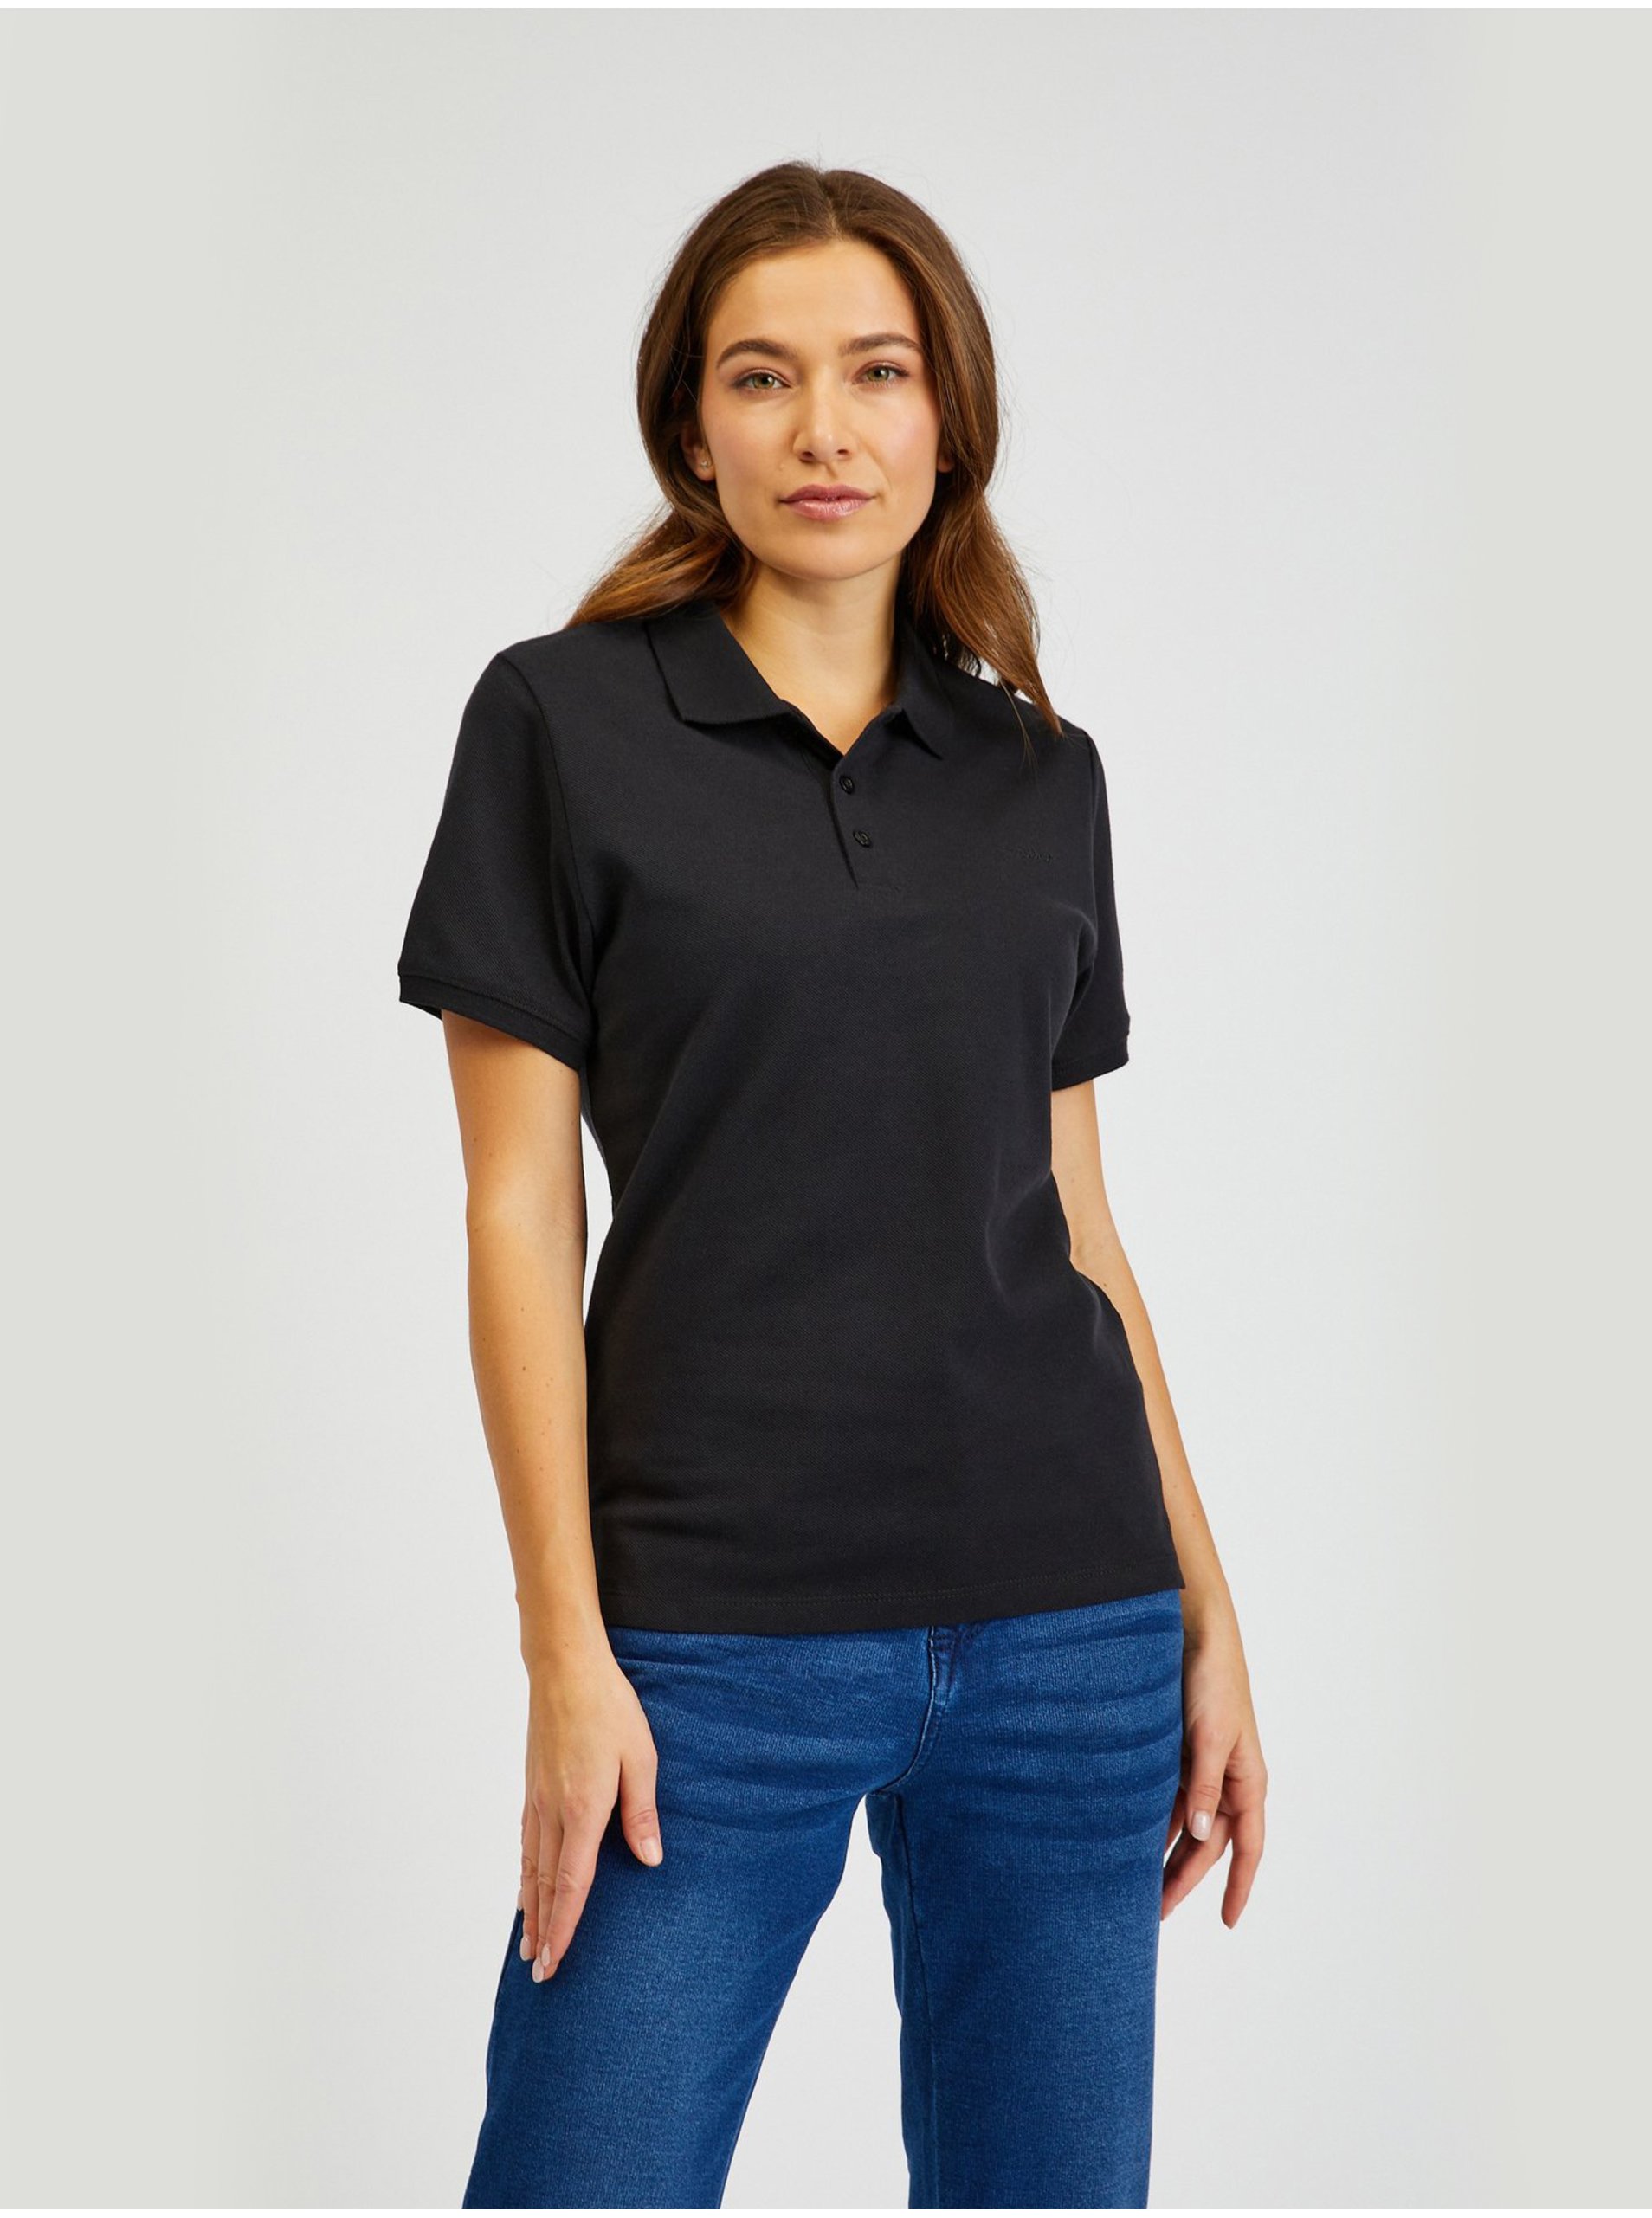 Lacno Basic tričká pre ženy SAM 73 - čierna